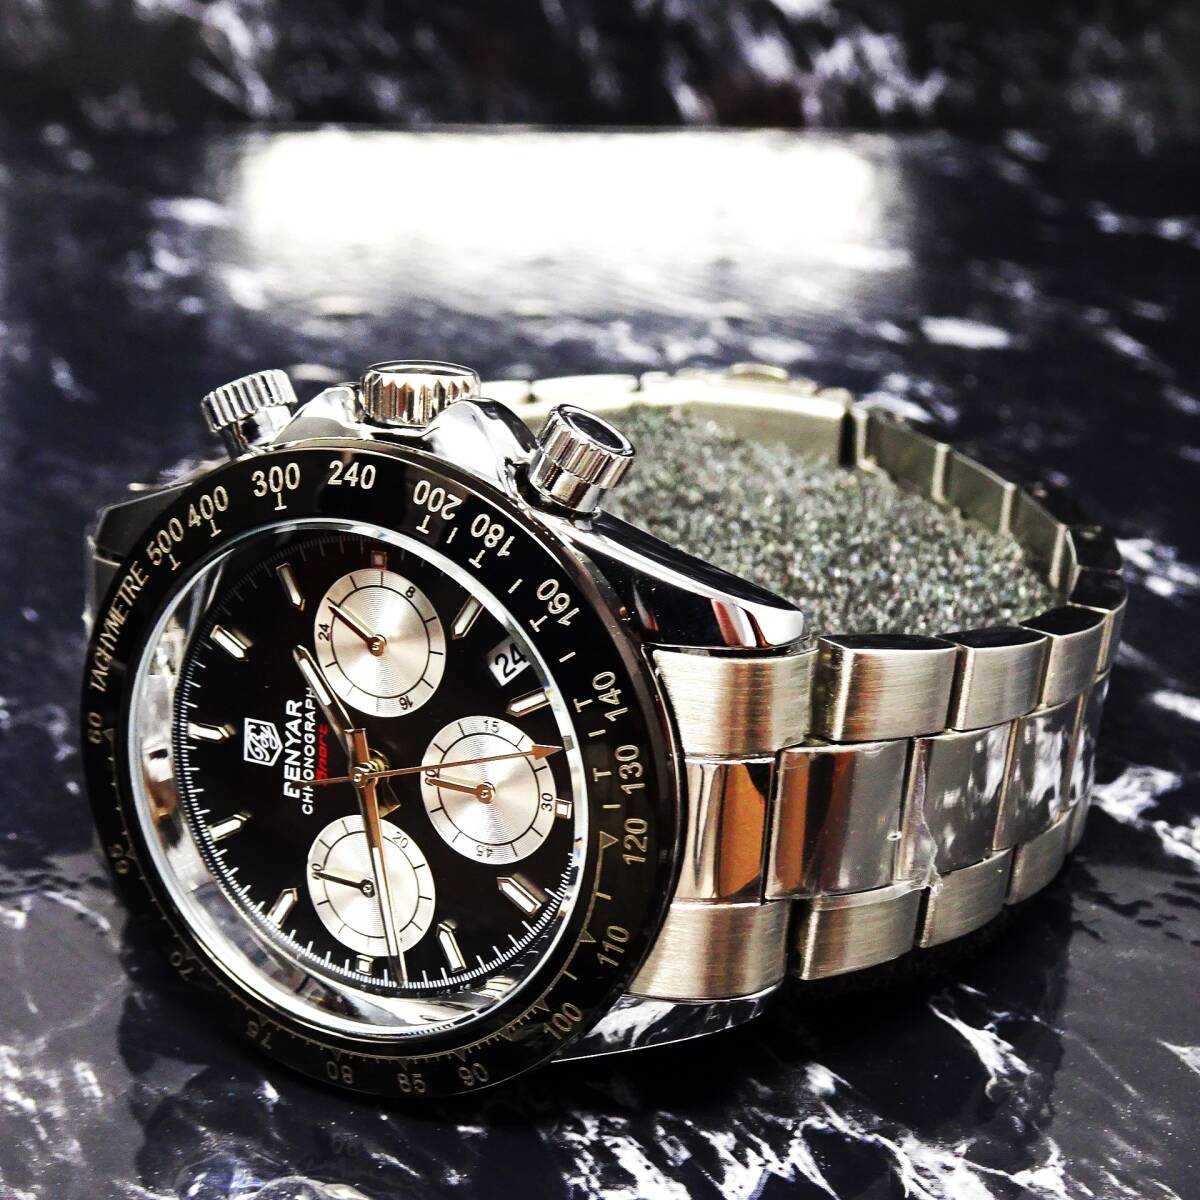 〓送料無料〓新品〓BENYARブランド・メンズ・クロノグラフ・24時間、カレンダー表示・クオーツ式腕時計・フルメタル・パンダウオッチの画像1